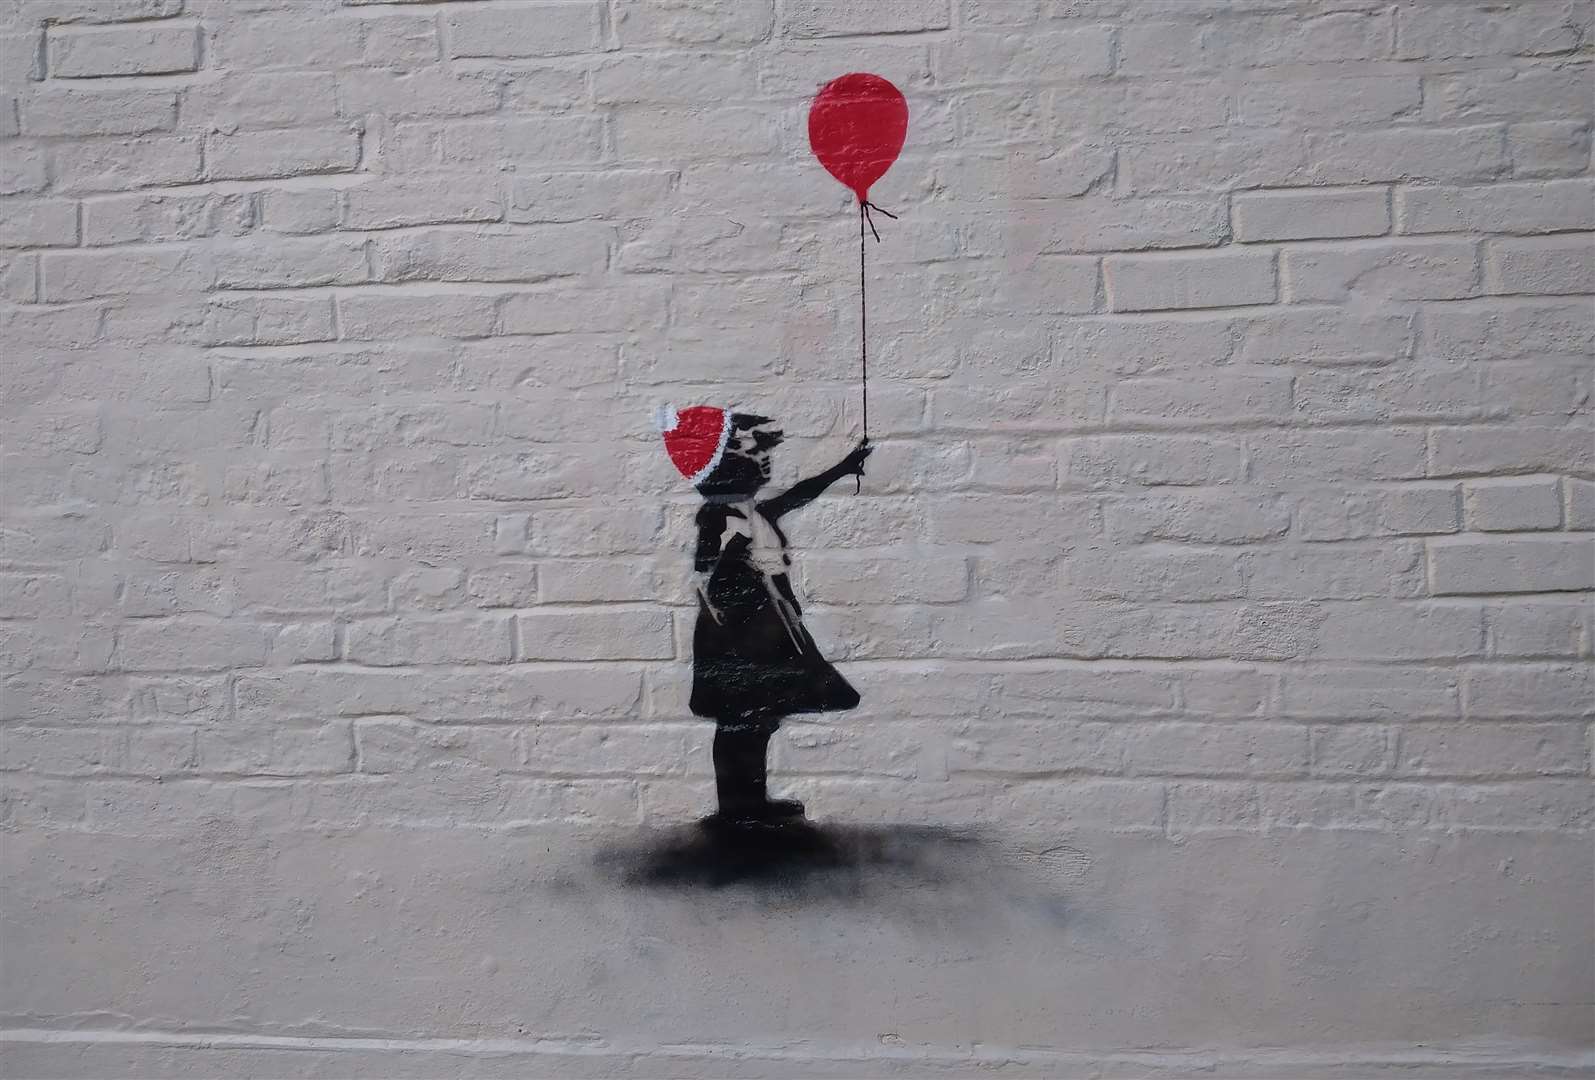 The 'Banksy' artwork is in Sandwich's Three Kings Yard alleyway